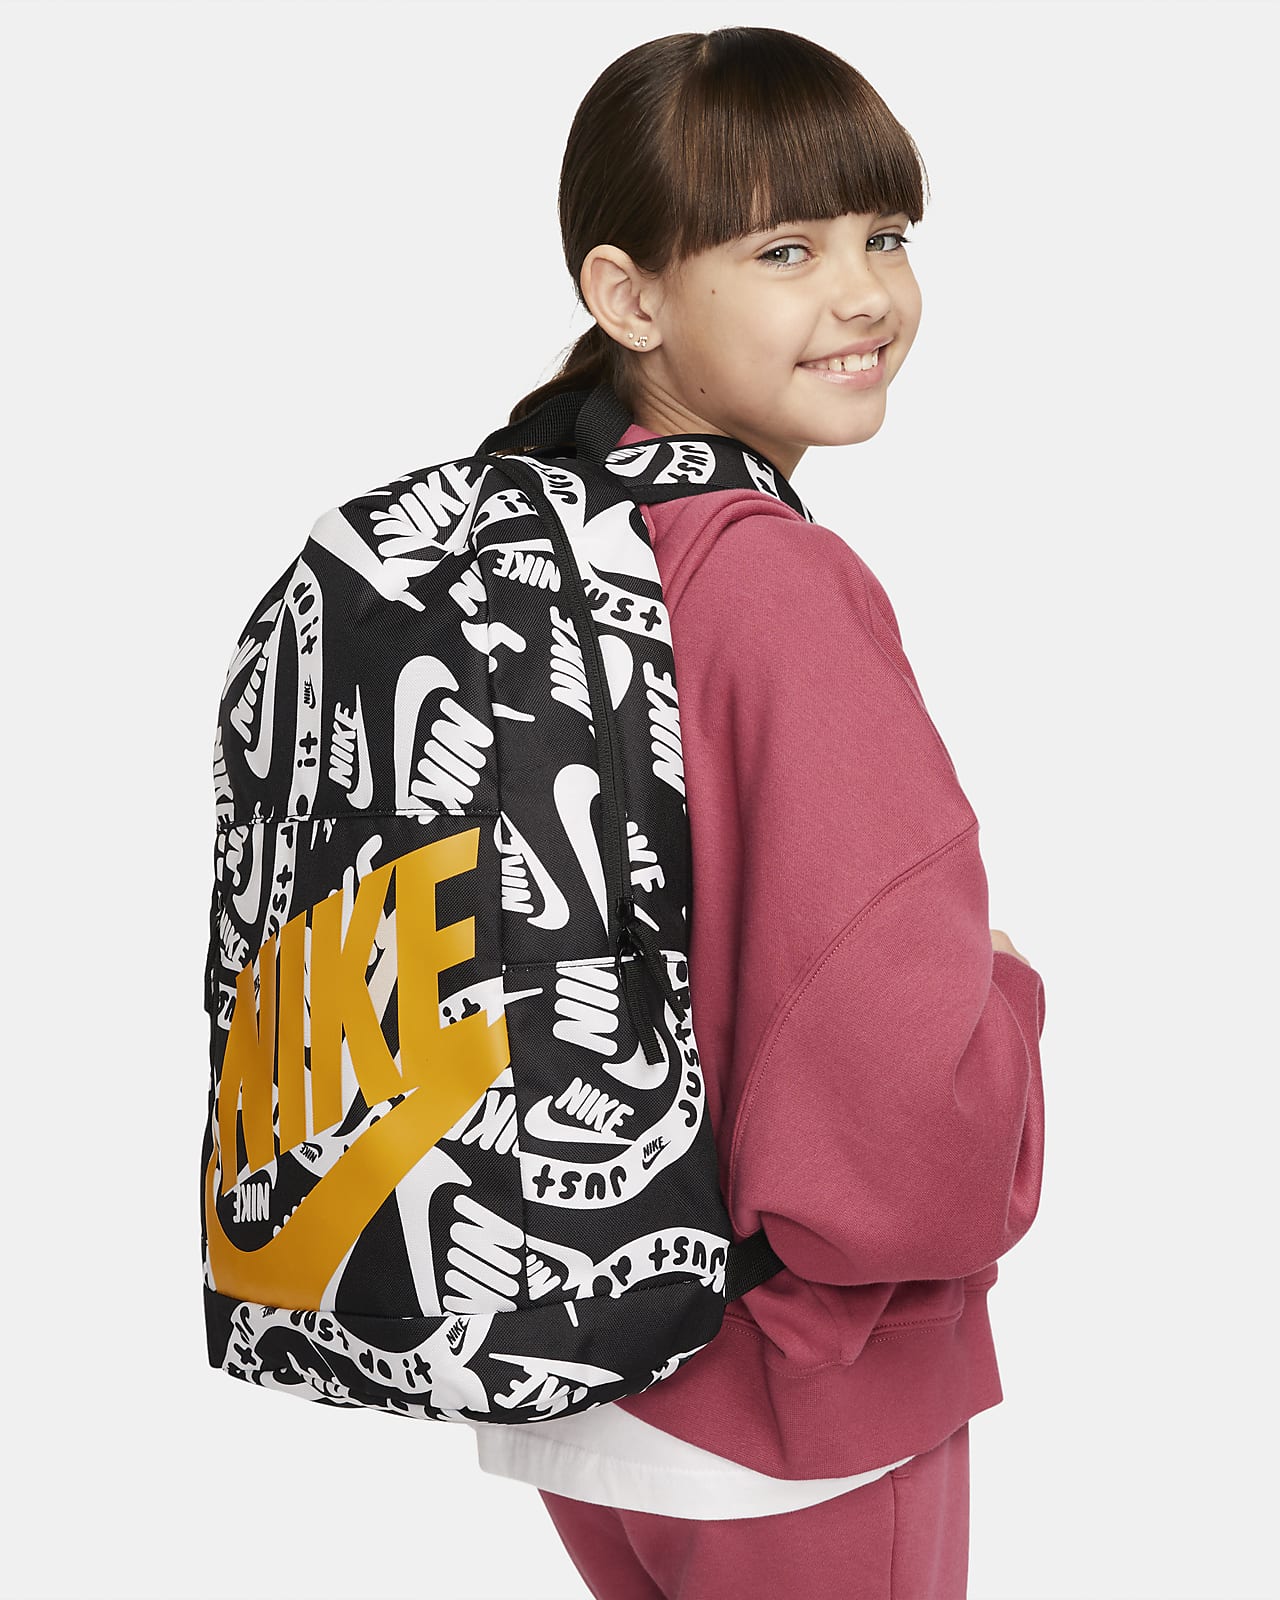 Nike Elemental Kids' Backpack (20L)